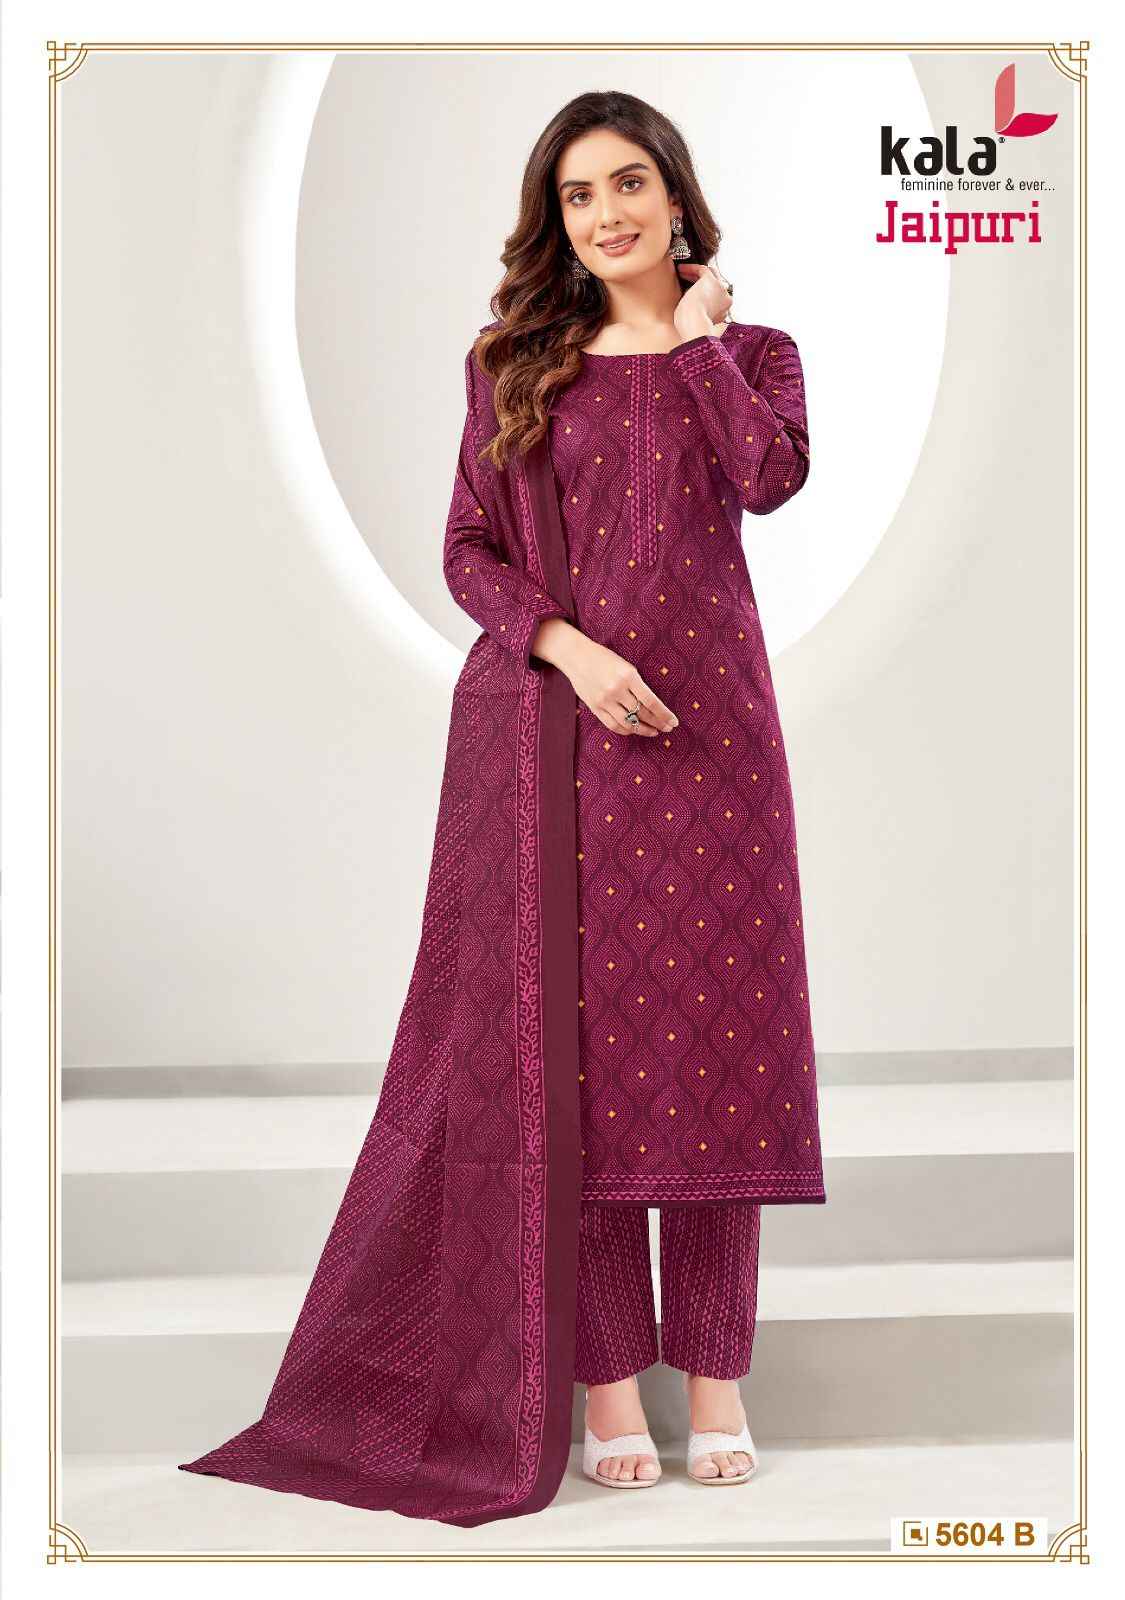  Kala Jaipuri Vol-4 Cotton Readymade Suit (12 Pc Catalog)